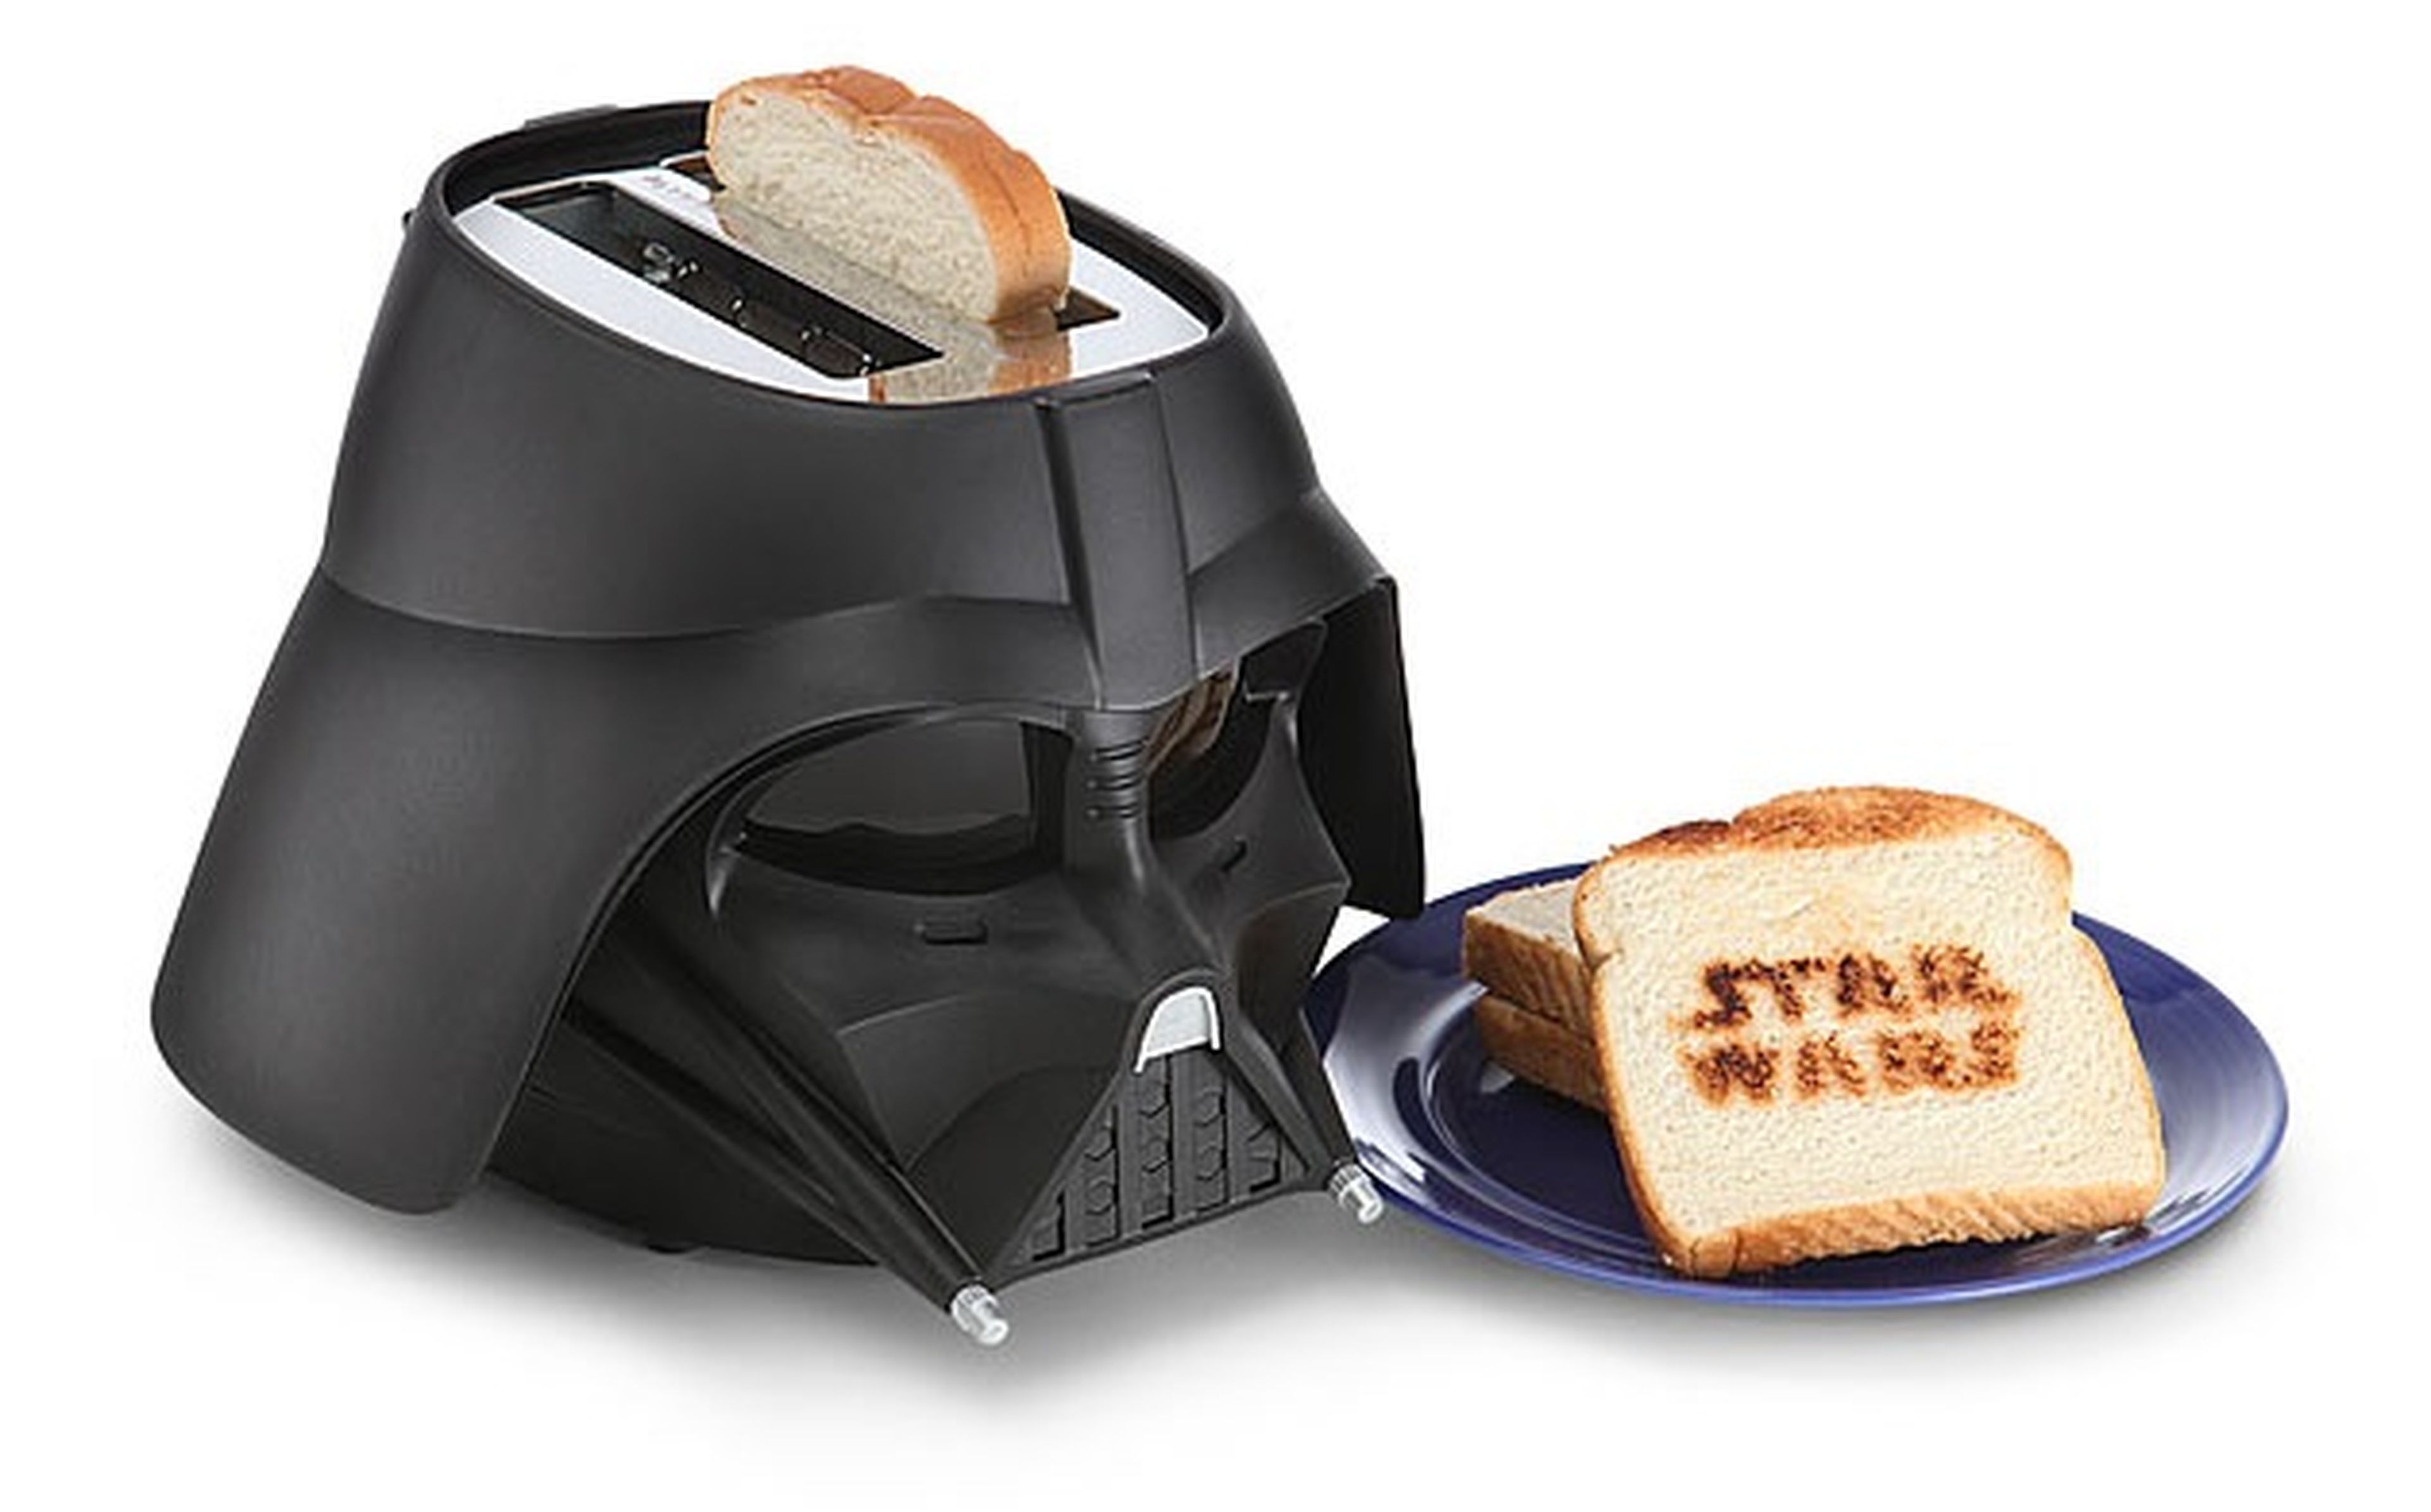 La tostadora de Darth Vader que convertirá tu pan al lado oscuro